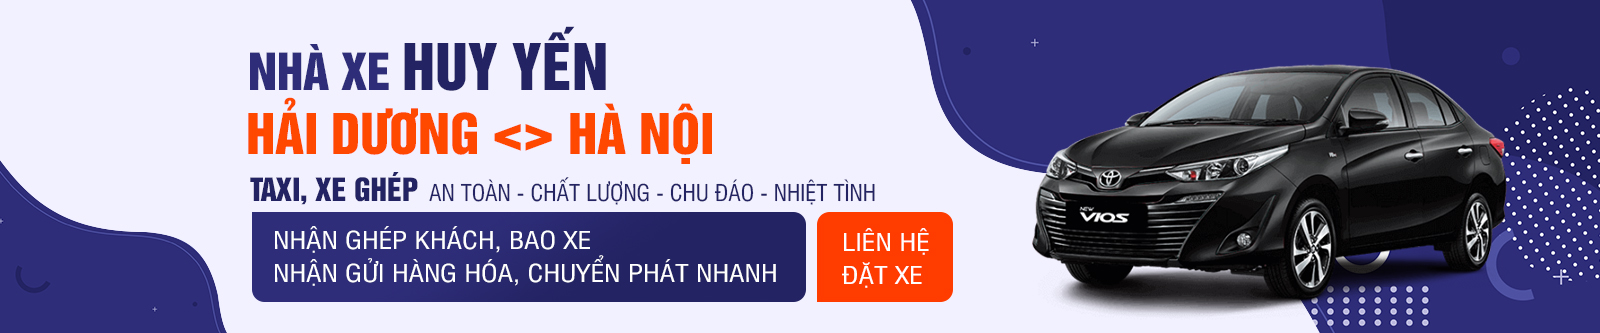 Nhà xe Huy Yến tuyến Hải Dương - Hà Nội 